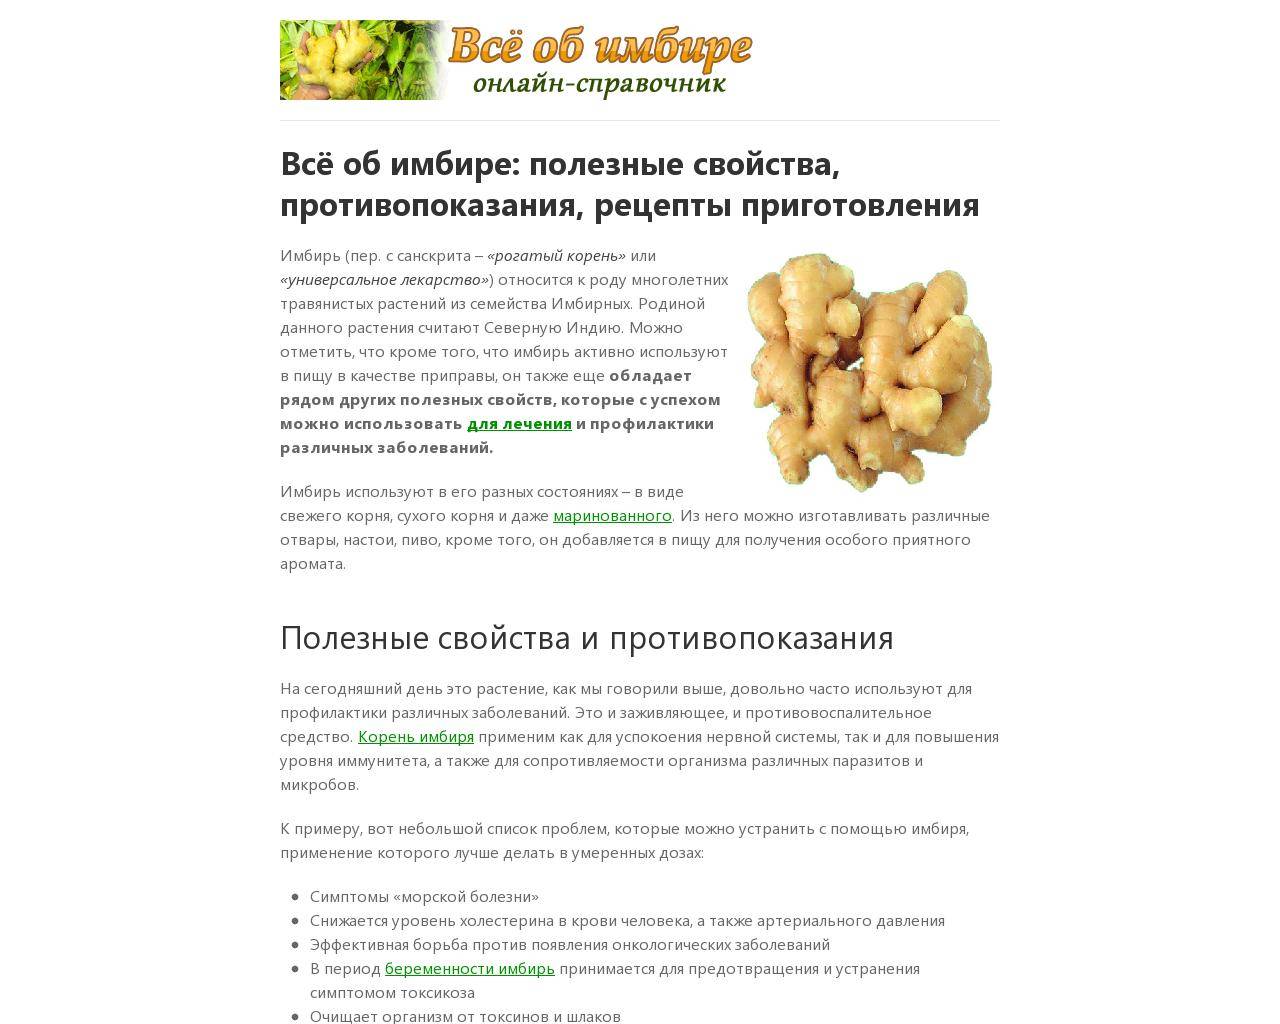 Как выбирать и хранить имбирь / советы для тех, кто любит острую приправу – статья из рубрики "как хранить" на food.ru